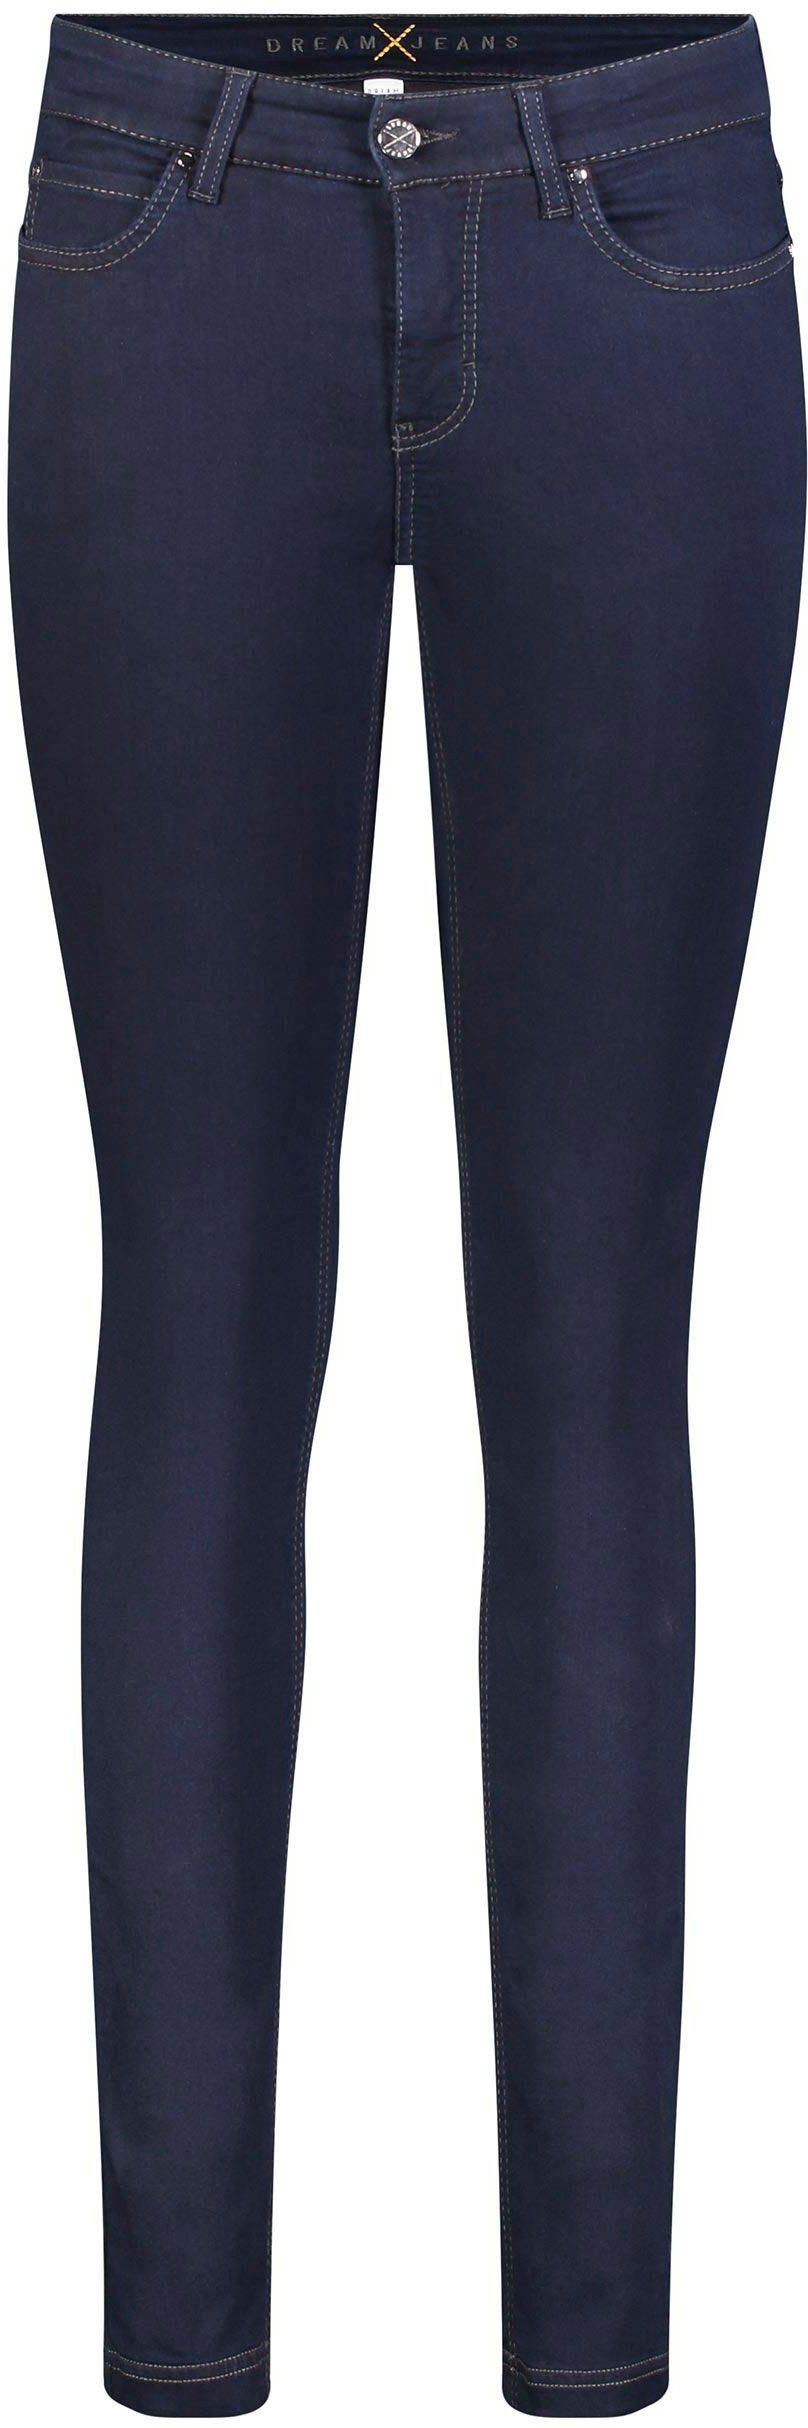 für Hochelastische sorgt Sitz rinsed Skinny-fit-Jeans Qualität perfekten den MAC Dream Skinny blue